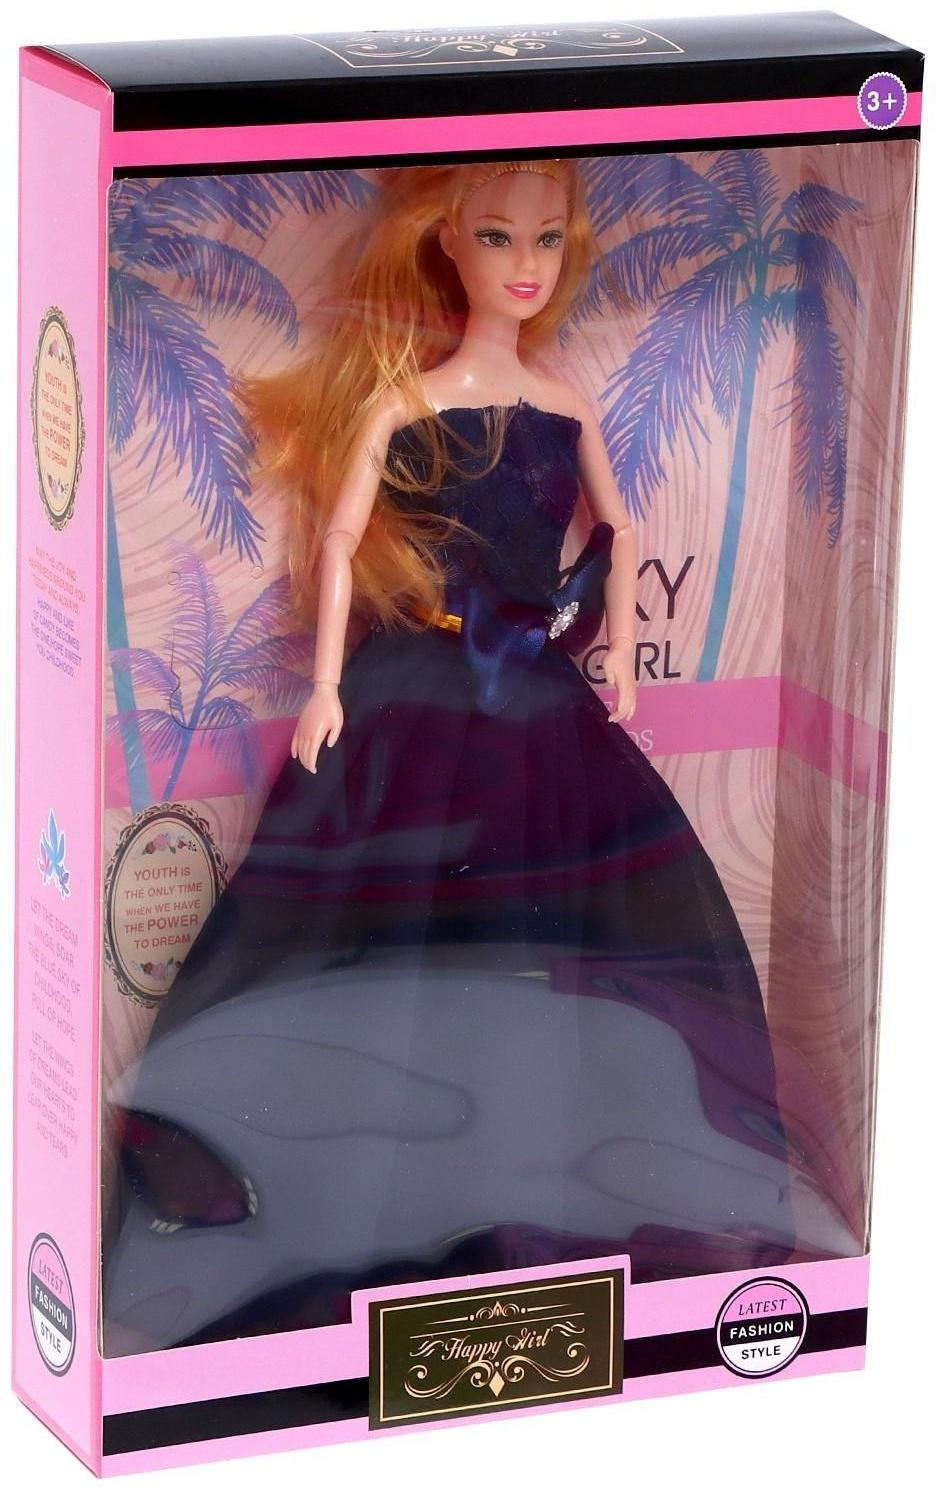 Кукла-модель «Миранда» в пышном платье, МИКС